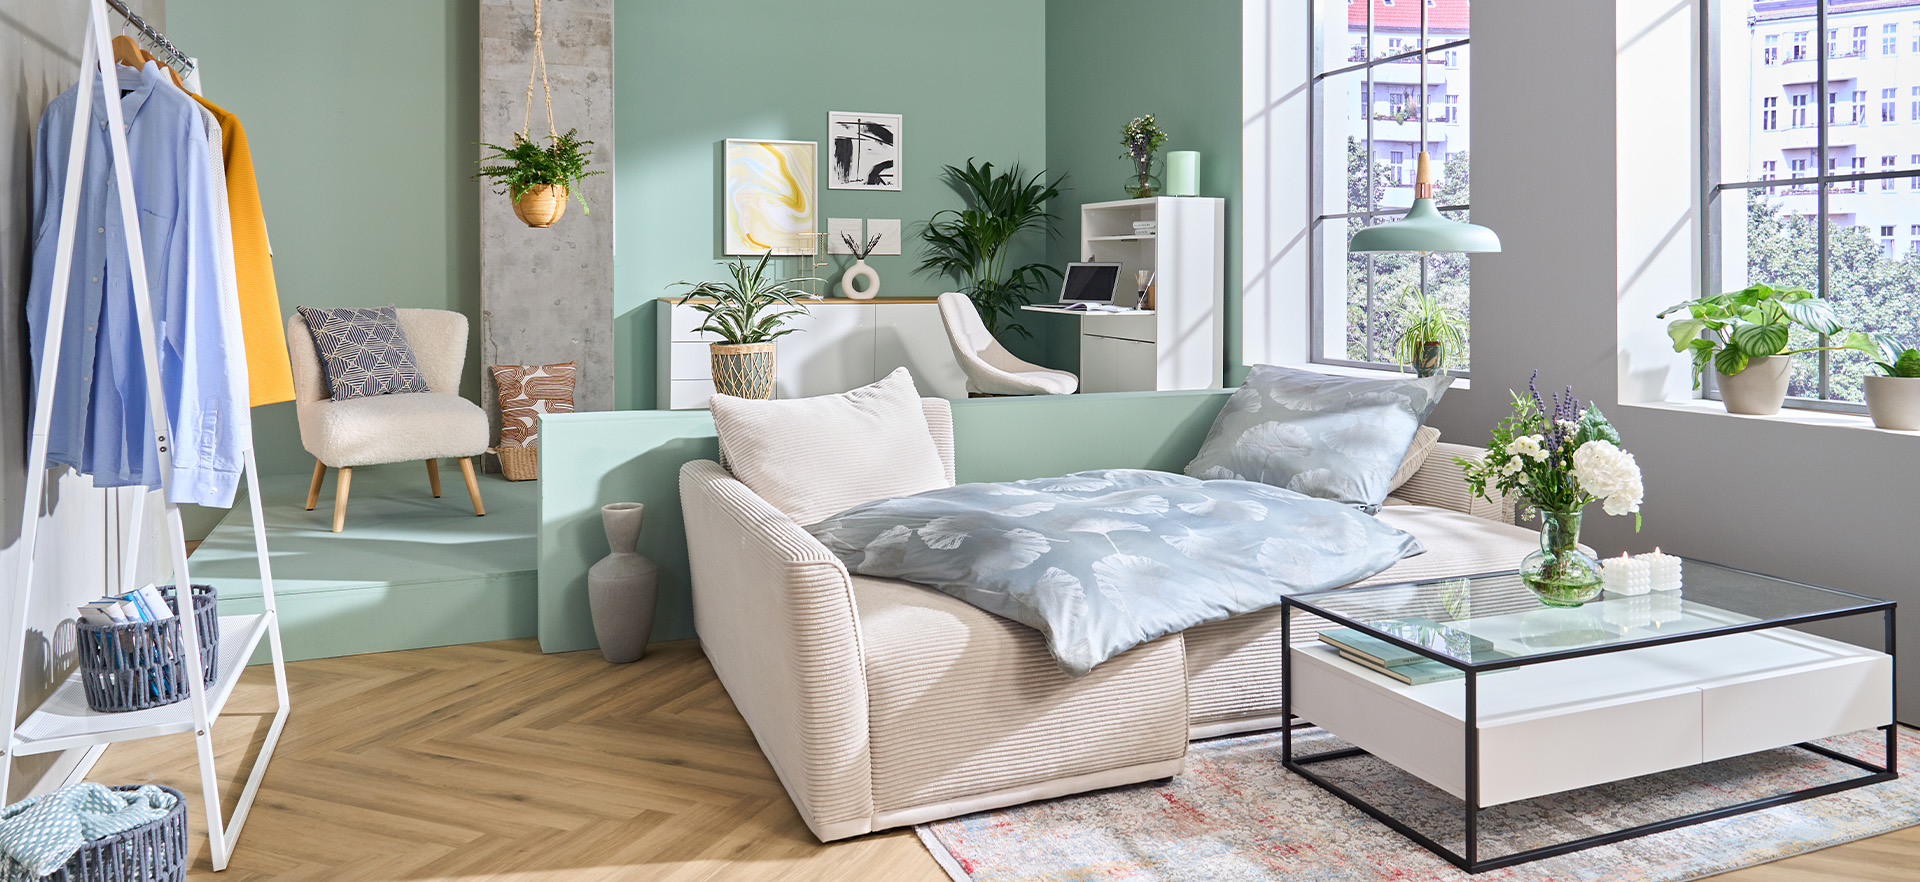 Decke CORD grün, Decken & Kissen, Wohnzimmer, Räume